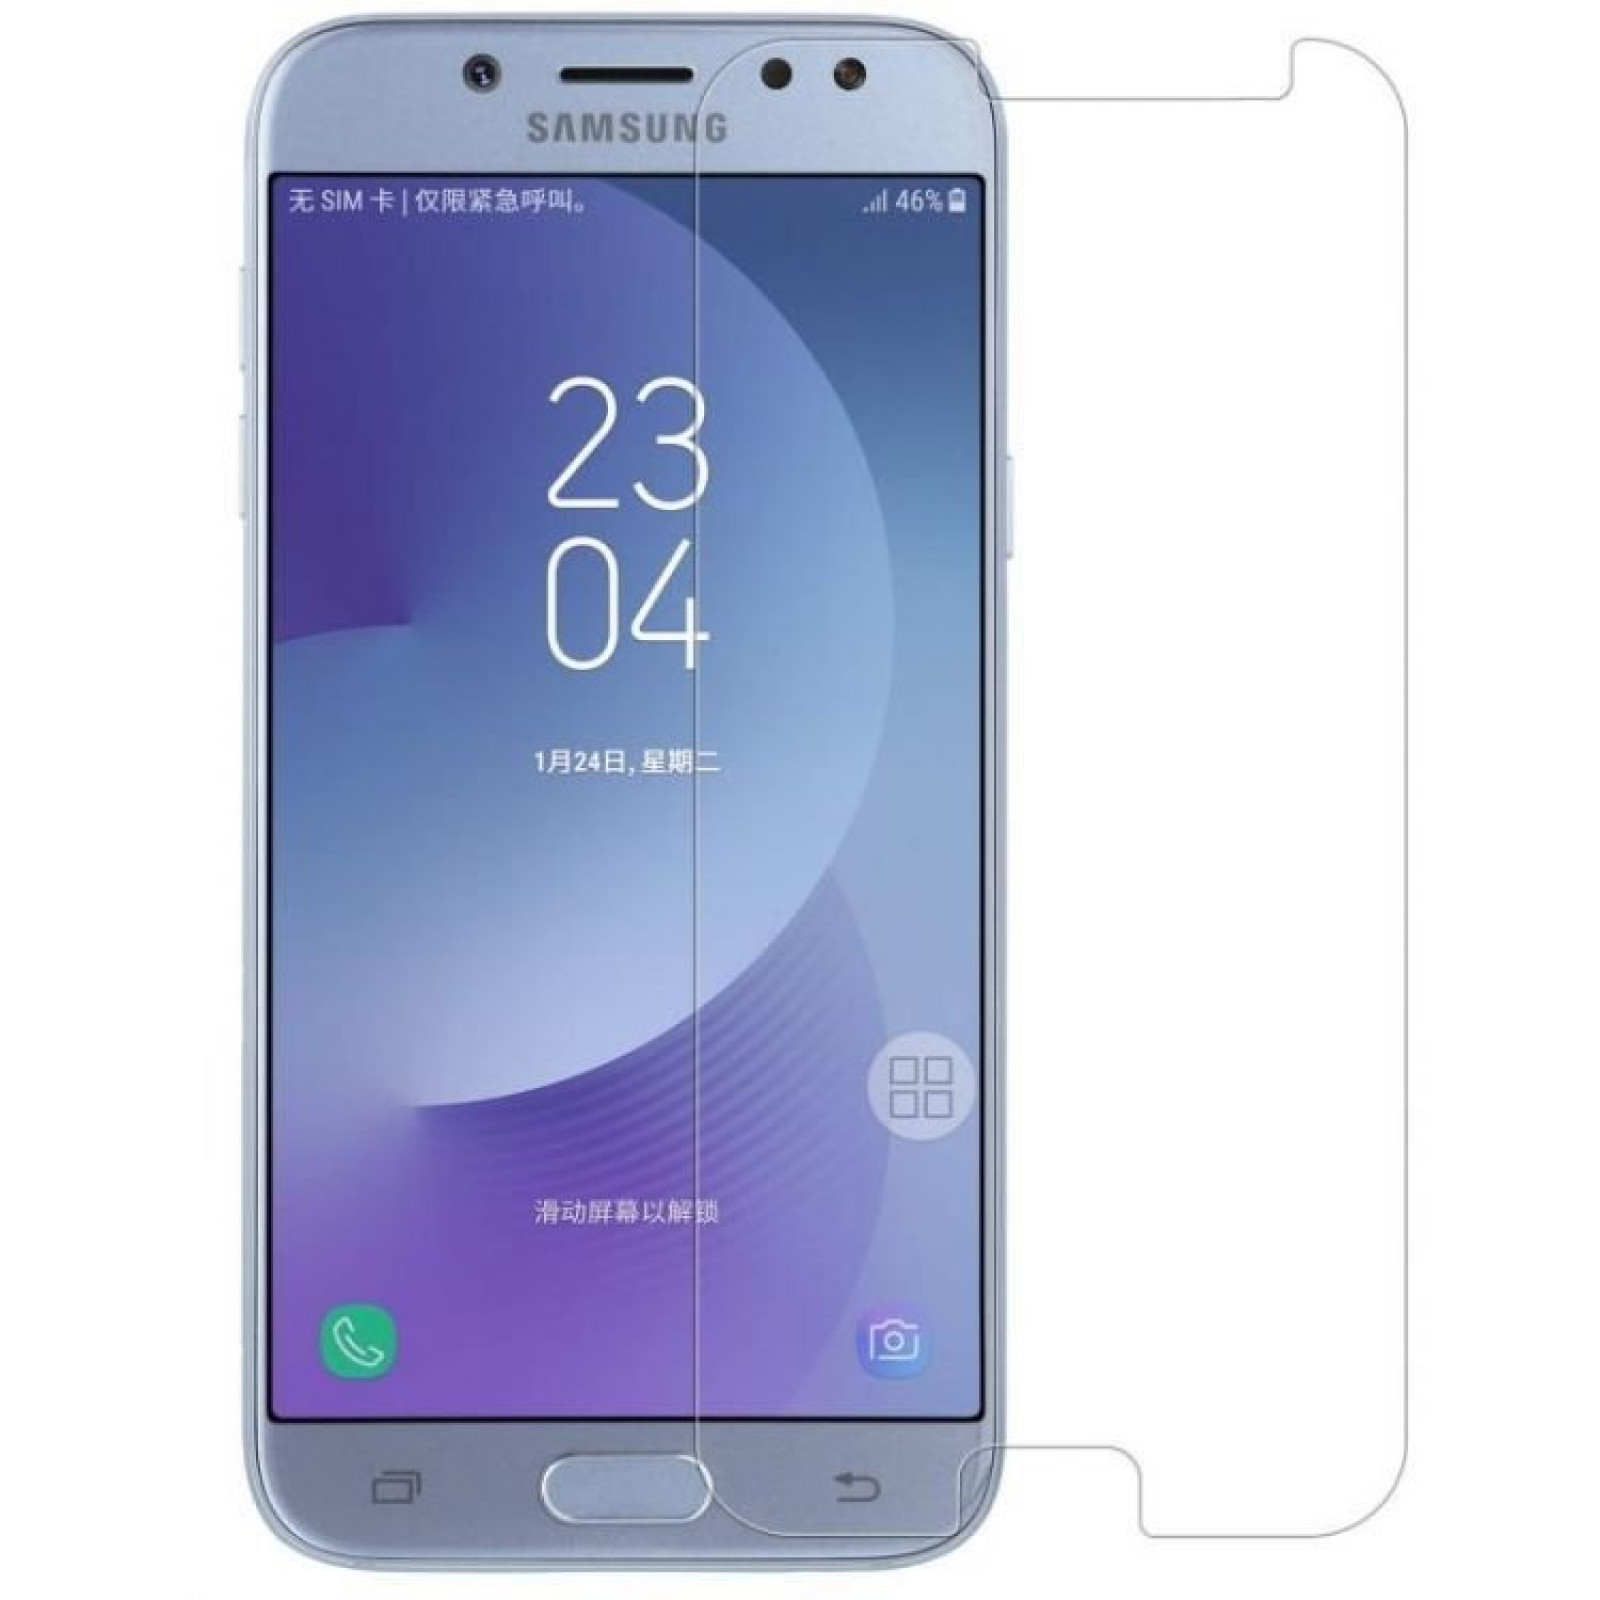 Стъклен протектор Teracell за Samsung Galaxy A9 (2018)  Прозрачен